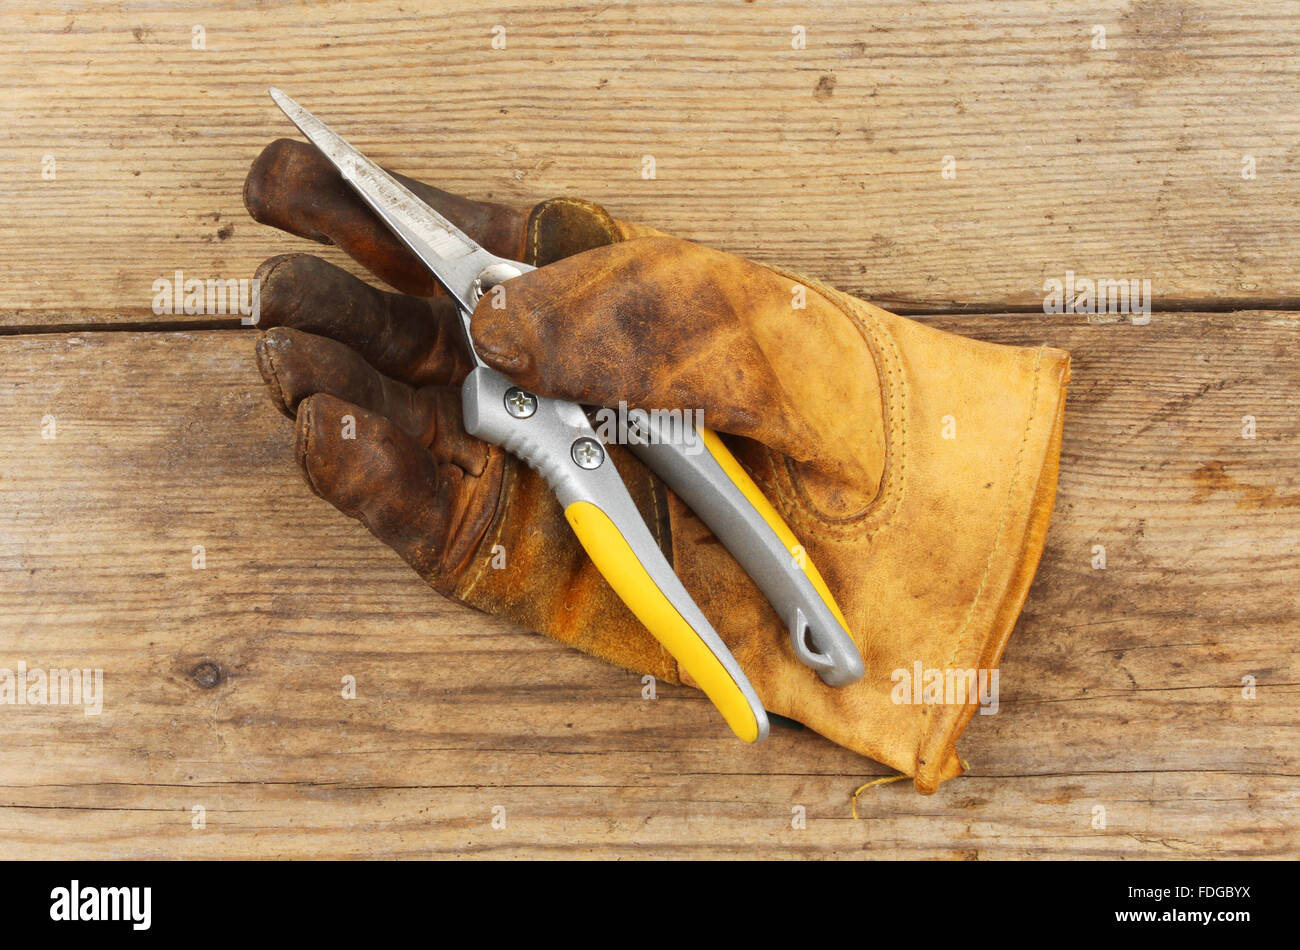 Vieux gant de jardinage avec un sécateur sur une planche en bois Banque D'Images